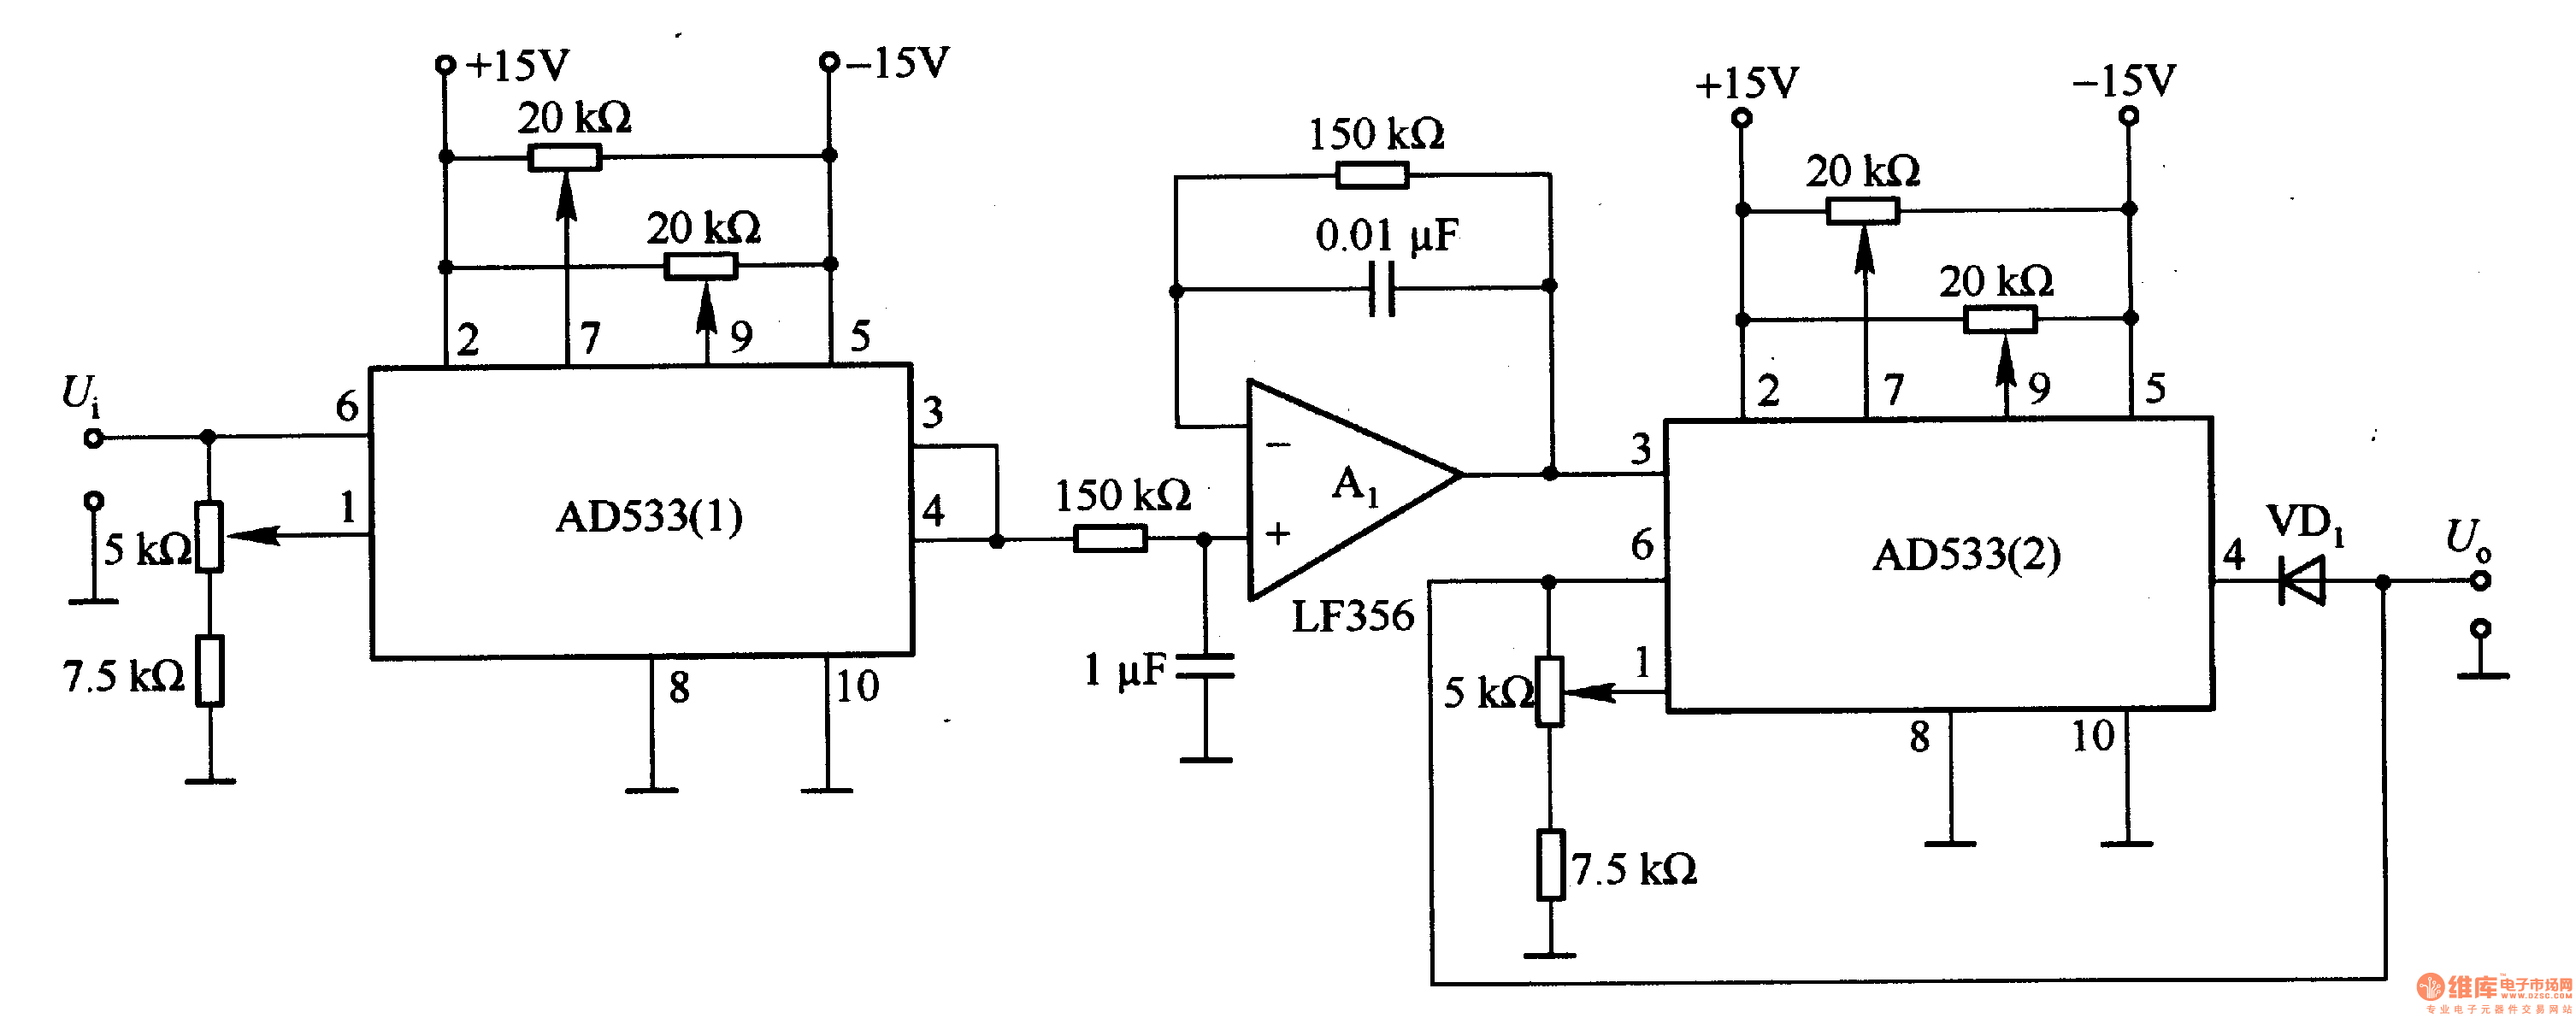 AC / DC converter circuit composed AD533 - - Circuit Diagram - SeekIC.com